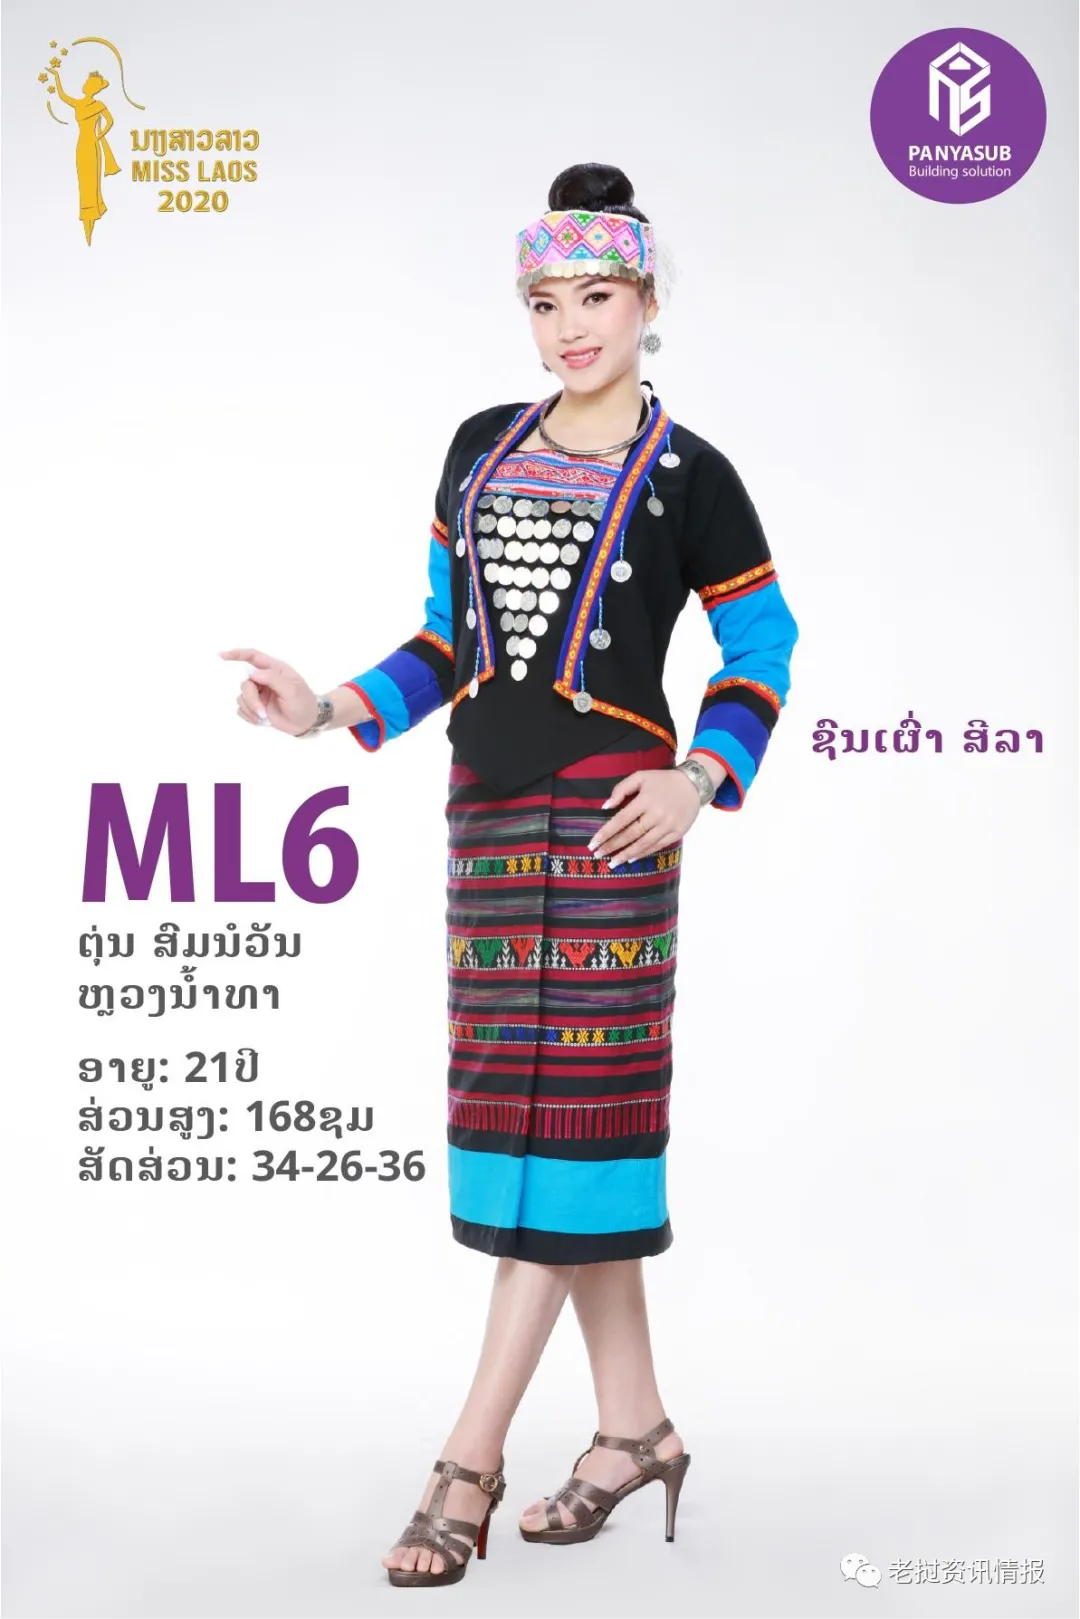 Thí sinh Luang Namtha trong trang phục dân tộc Oma